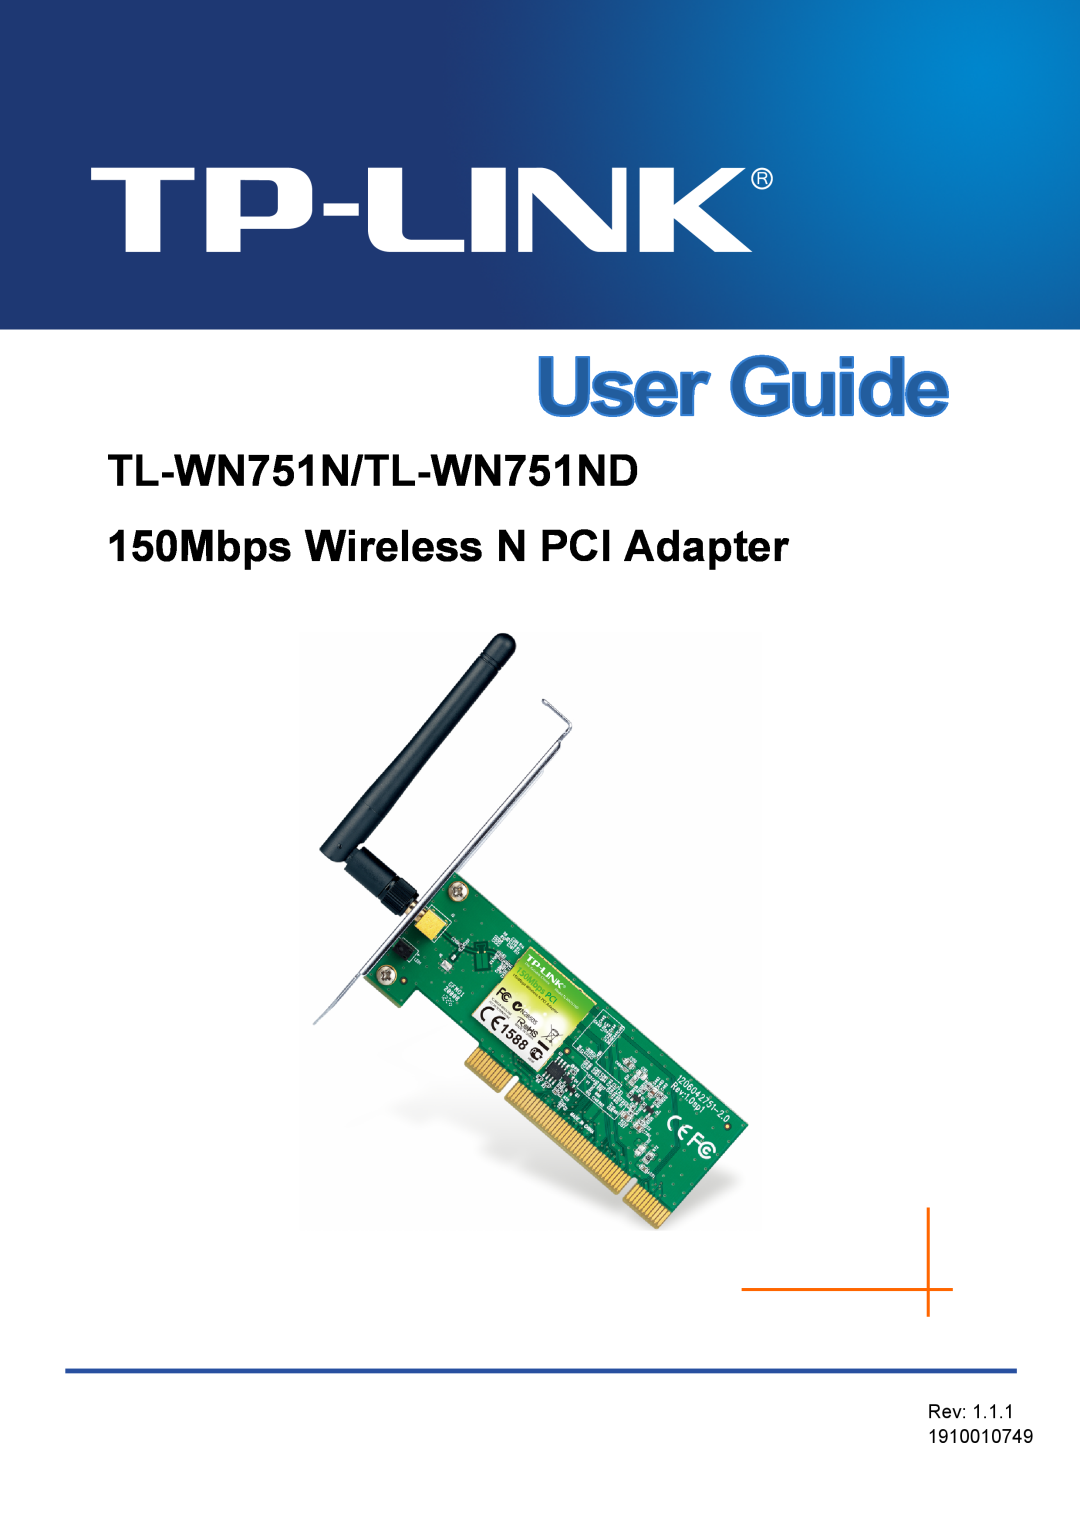 TP-Link TTL-WN751N manual TL-WN751N/TL-WN751ND 150Mbps Wireless N PCI Adapter, Rev 1.1.1 